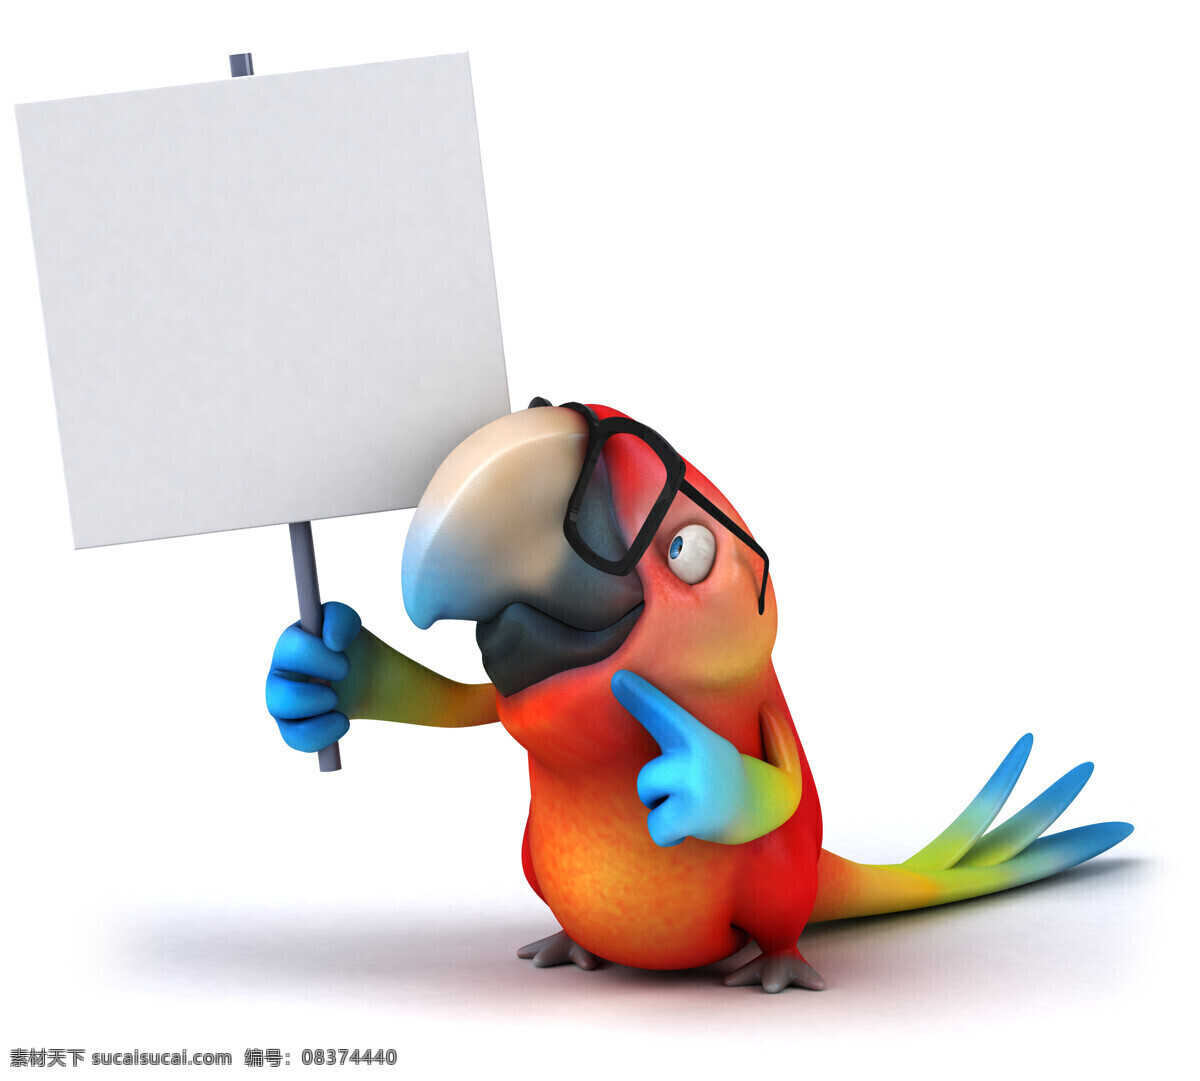 卡通 鹦鹉 广告牌 卡通鹦鹉 3d动物 卡通动物 生物世界